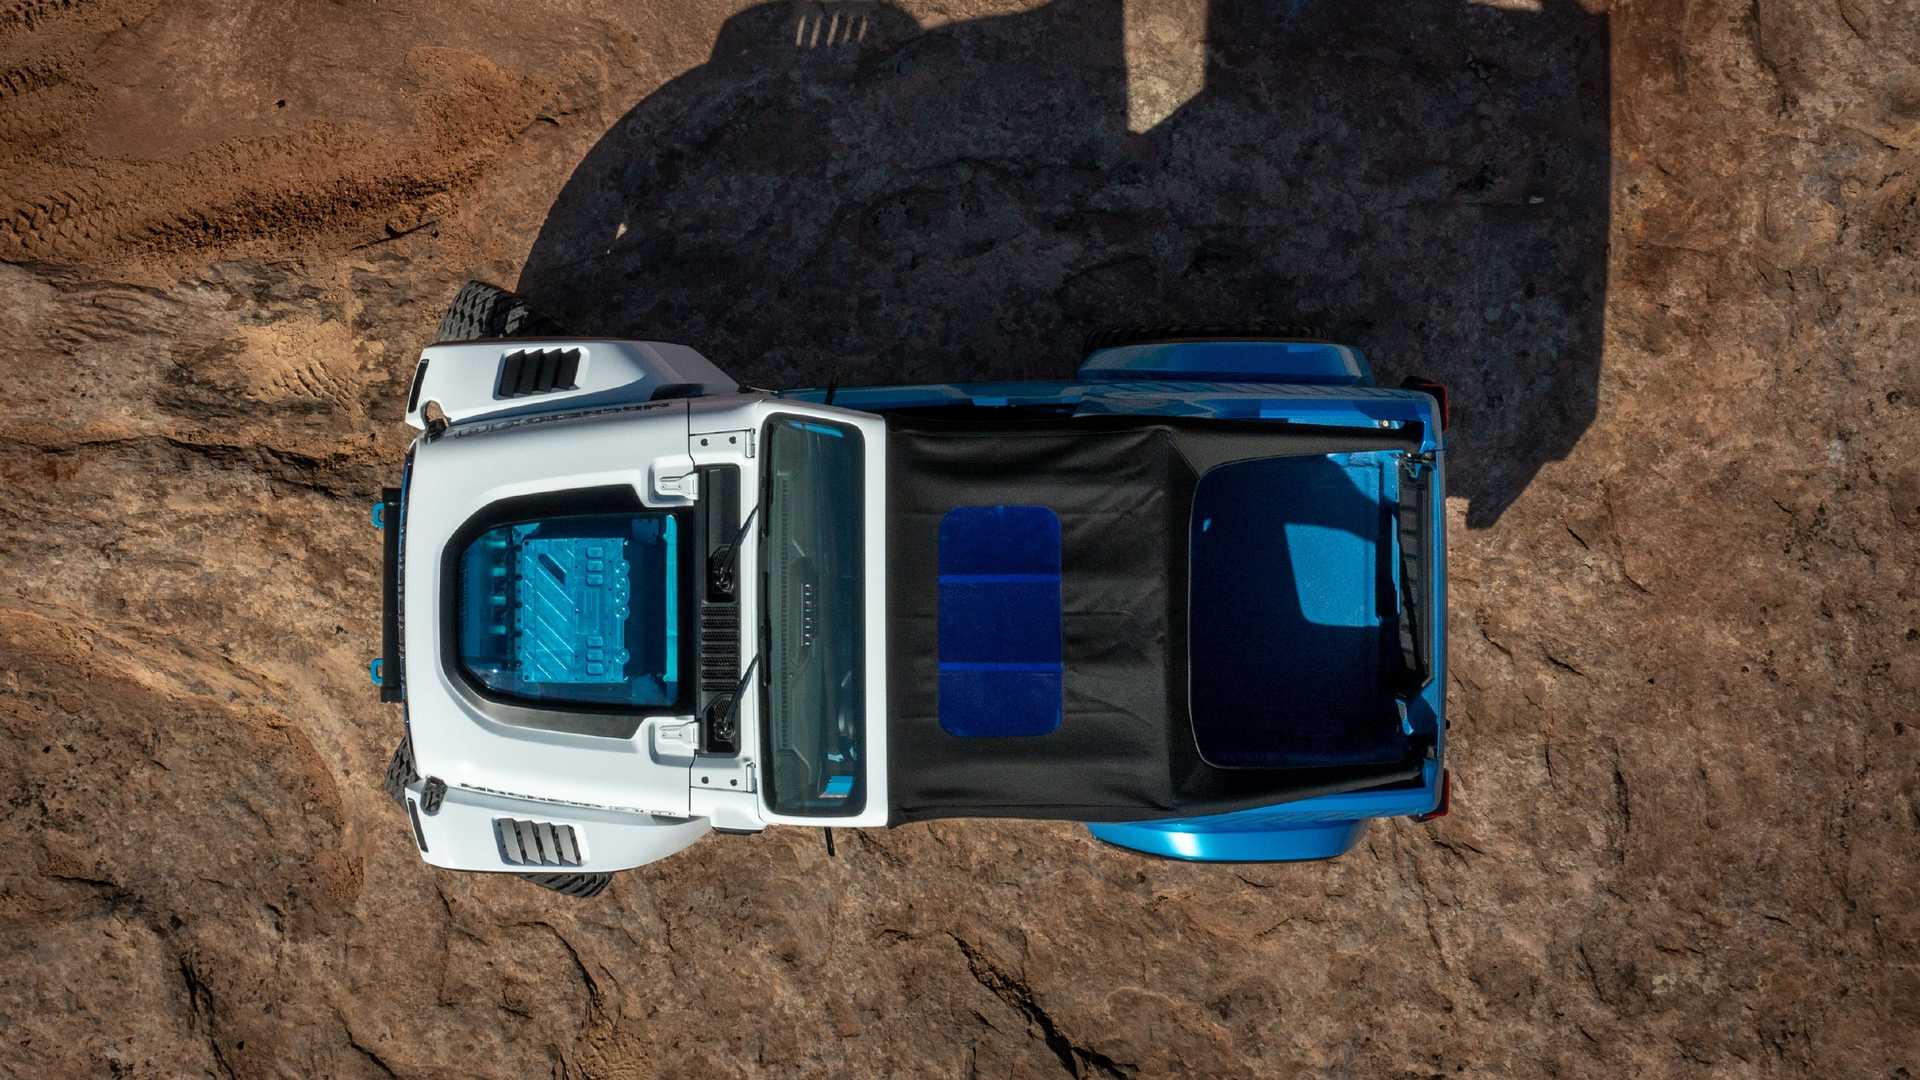 jeep wrangler magneto 3.0 ev concept packs 650 horsepower for effortless off-roading